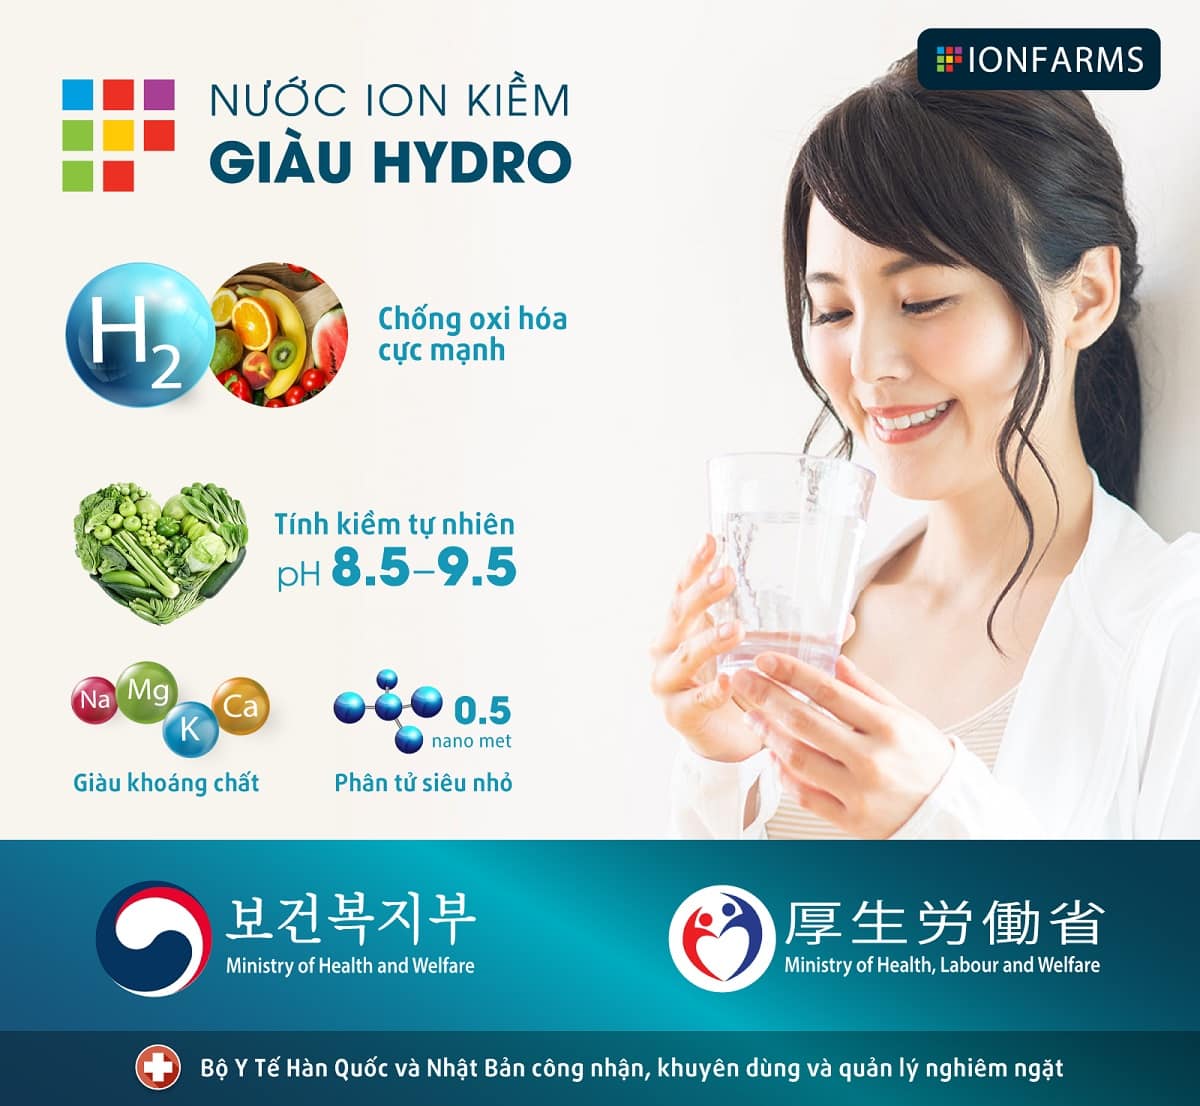 Nước ion kiềm giàu Hydro được Bộ Y tế Hàn Quốc và Nhật Bản khuyên dùng